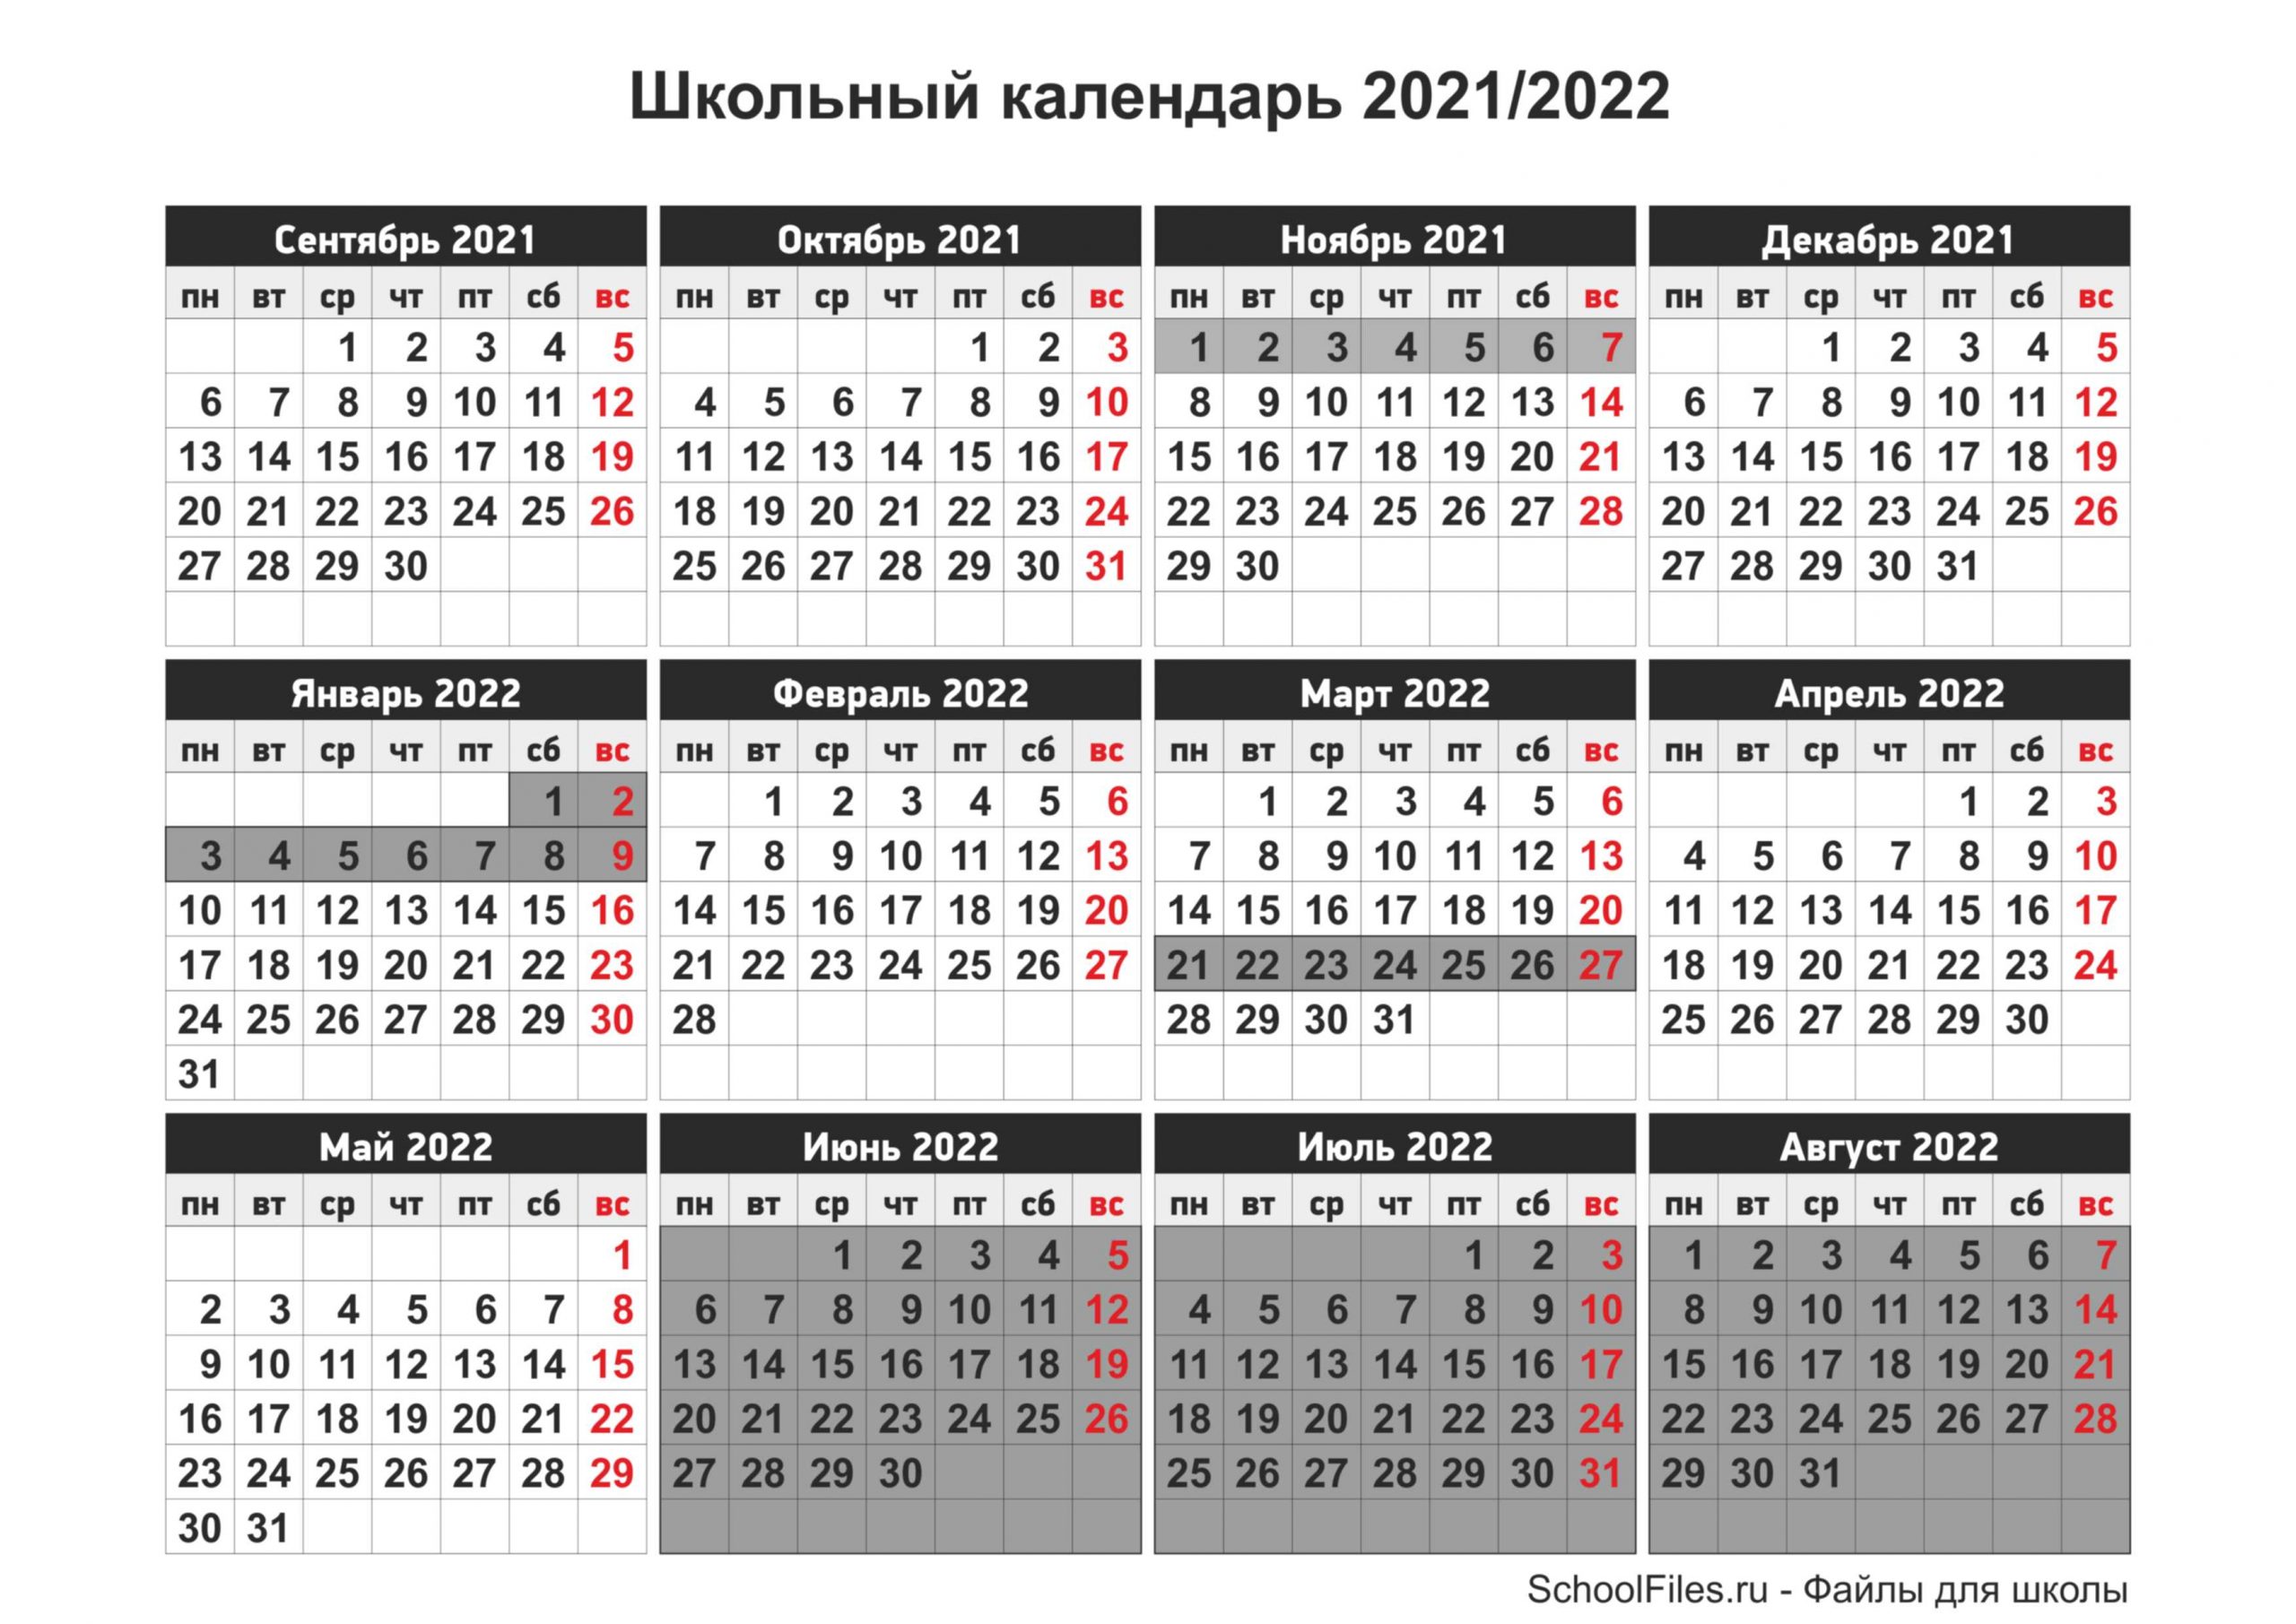 Распечатать школьный календарь 2021/2022 — Файлы для школы